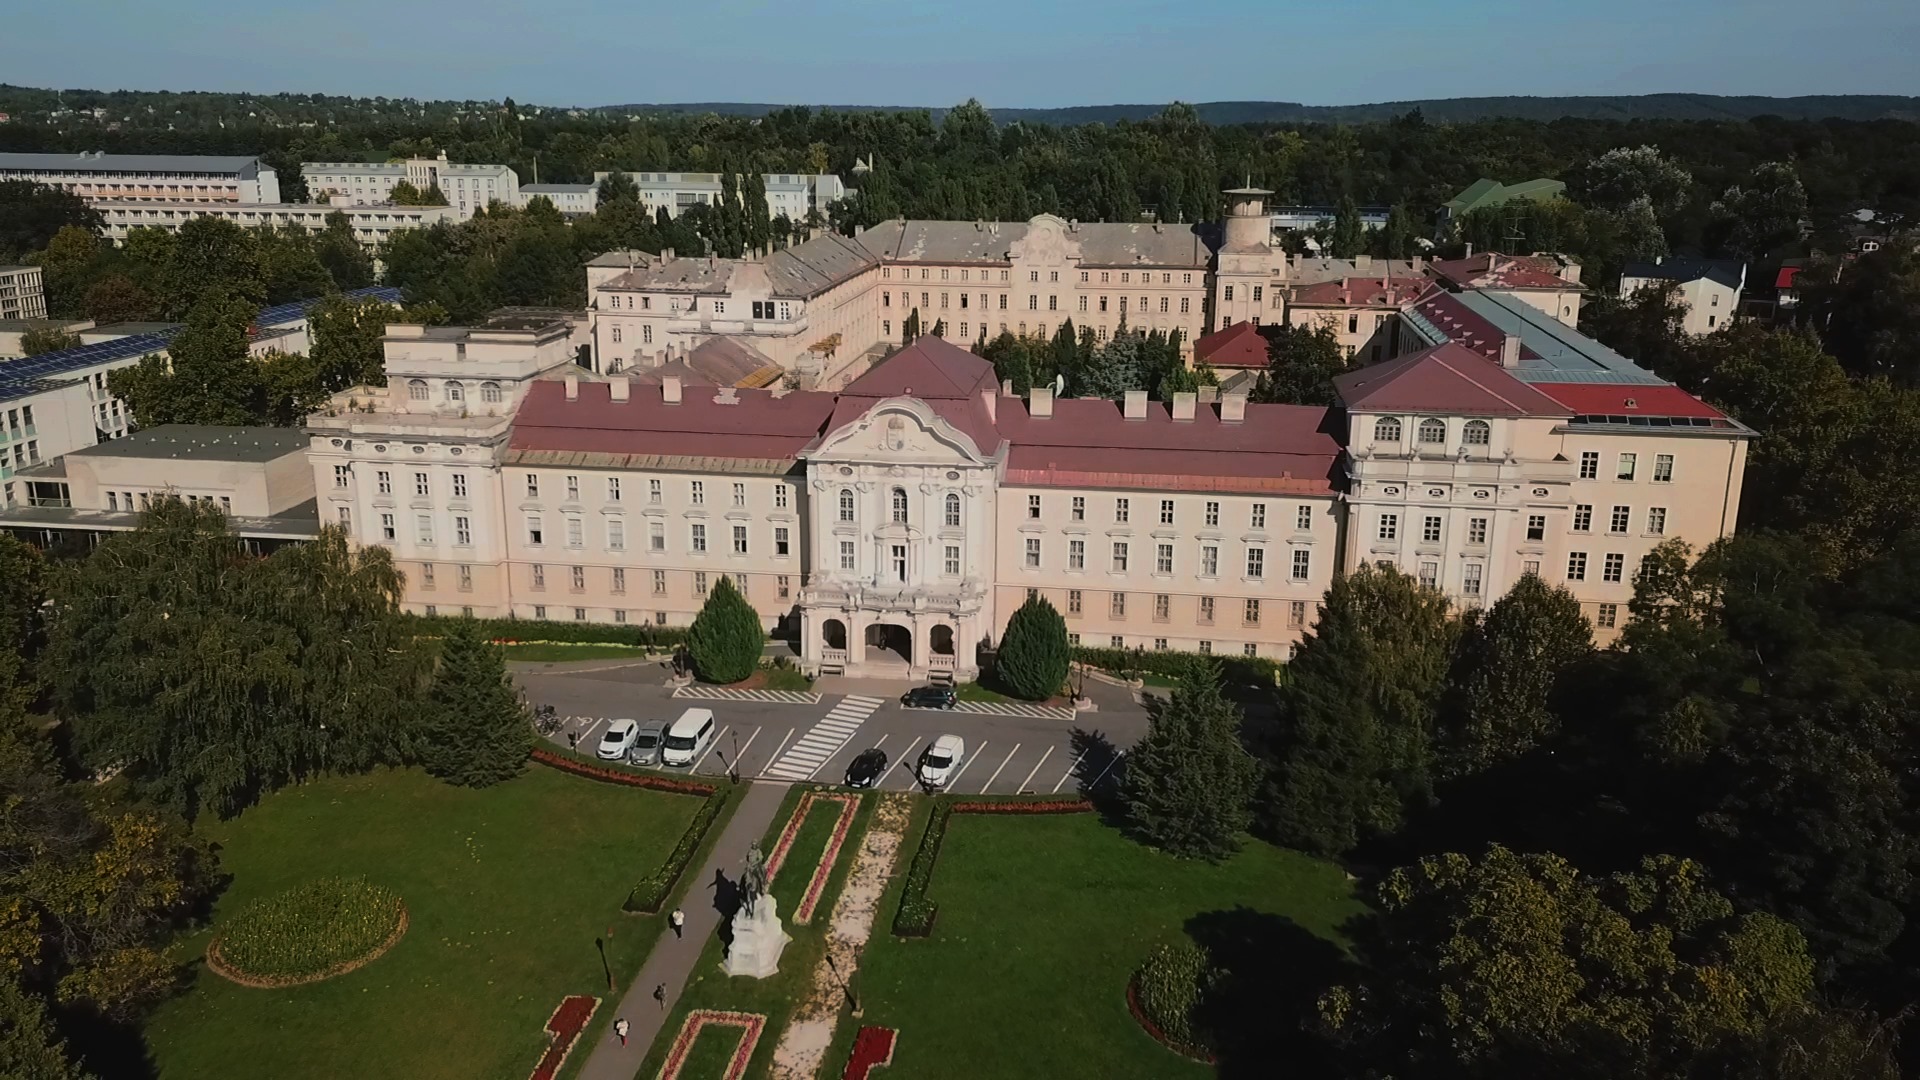 SZIE gödöllő Szent István University 农业匈牙利图片